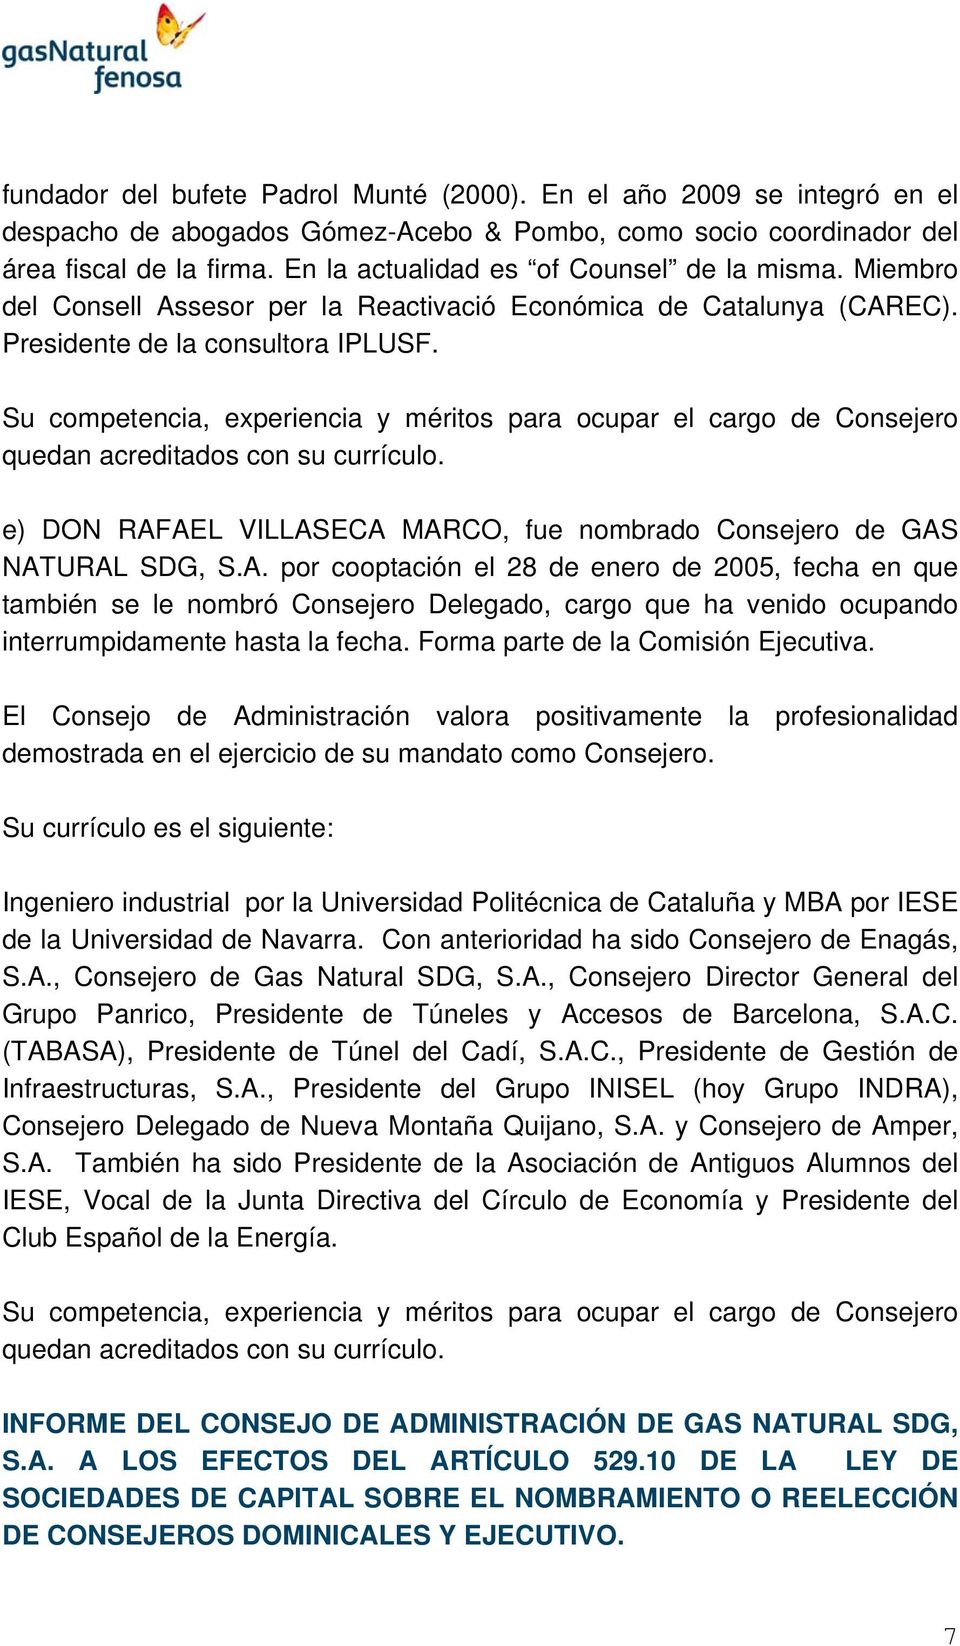 e) DON RAFAEL VILLASECA MARCO, fue nombrado Consejero de GAS NATURAL SDG, S.A. por cooptación el 28 de enero de 2005, fecha en que también se le nombró Consejero Delegado, cargo que ha venido ocupando interrumpidamente hasta la fecha.